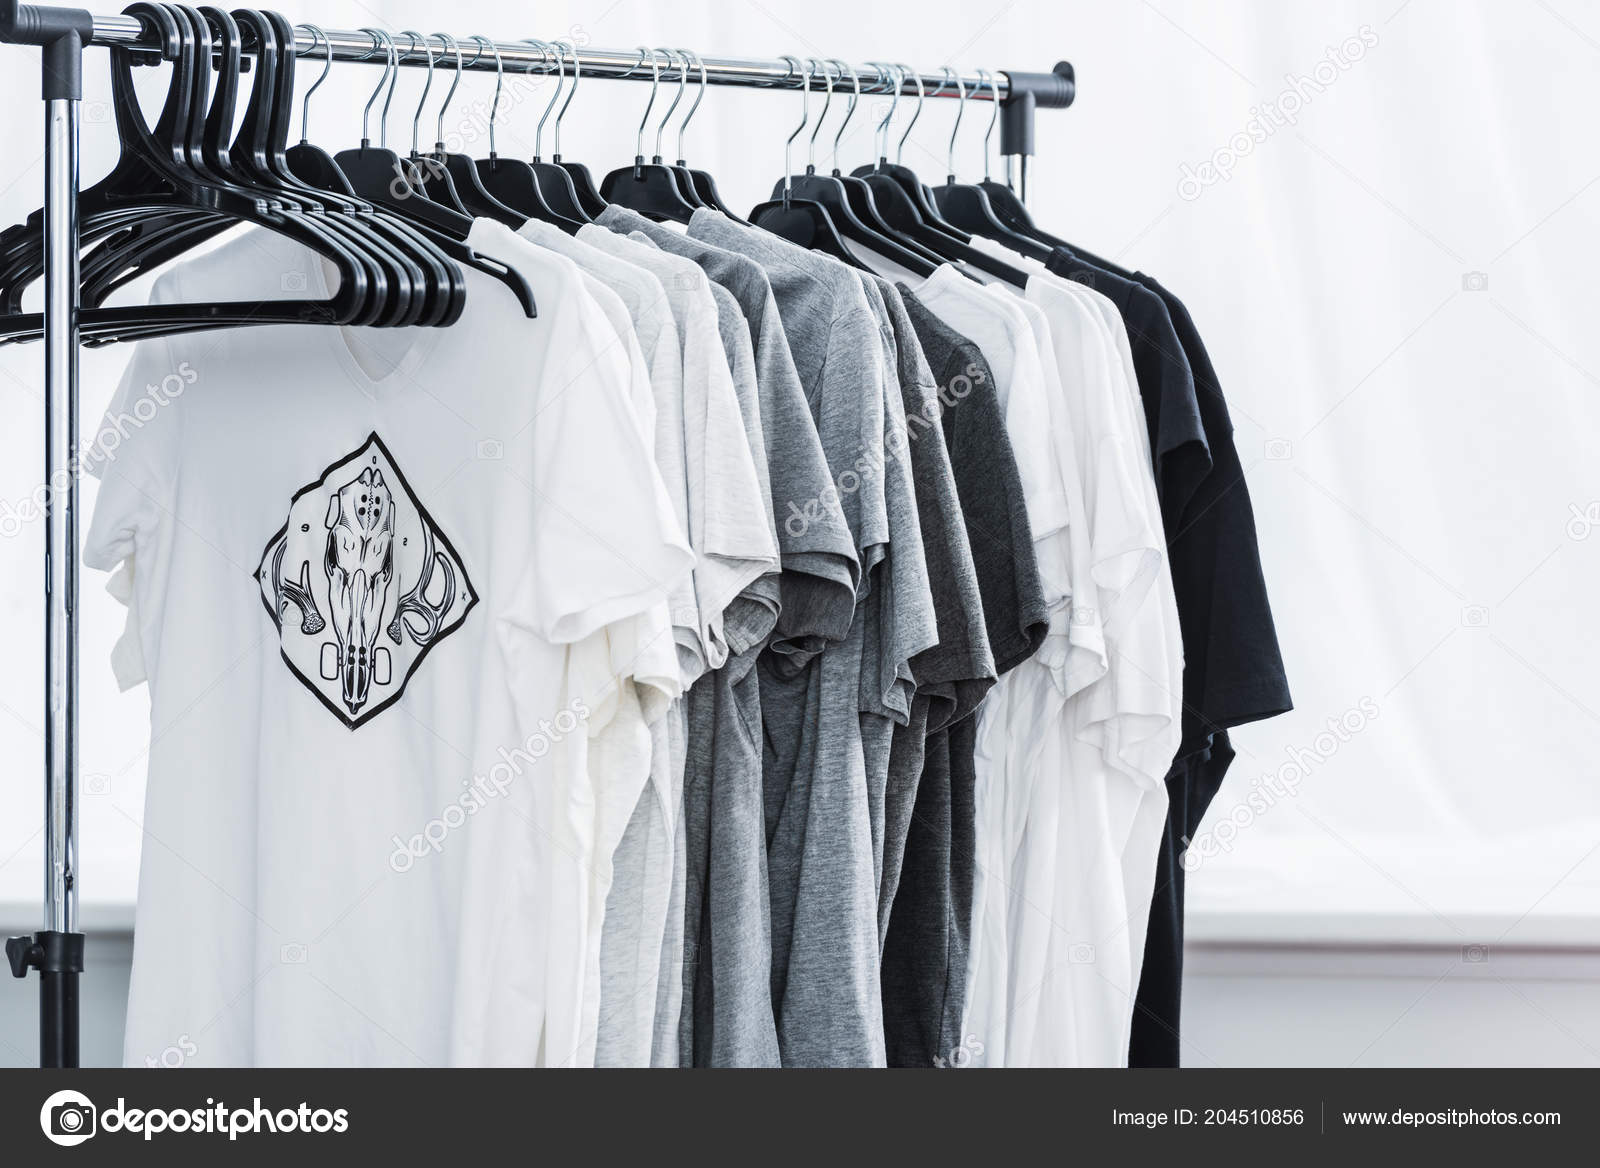 https://st4.depositphotos.com/13193658/20451/i/1600/depositphotos_204510856-stock-photo-selective-focus-shirts-print-hangers.jpg